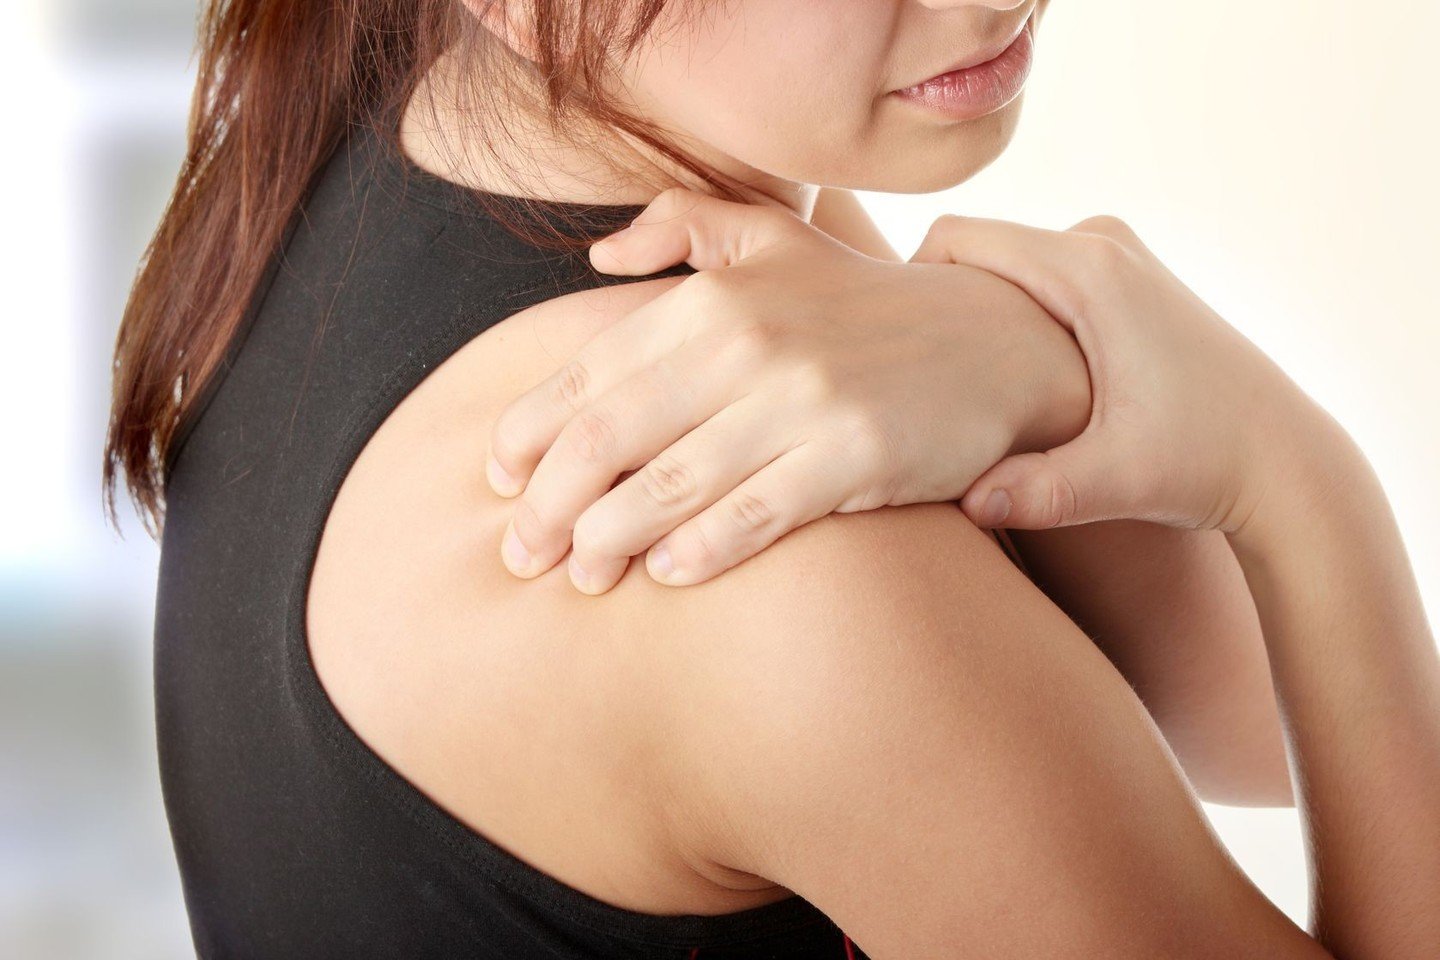 skausmas kairėje pusėje po krūtine skipidar tepalas su sąnarių skausmas